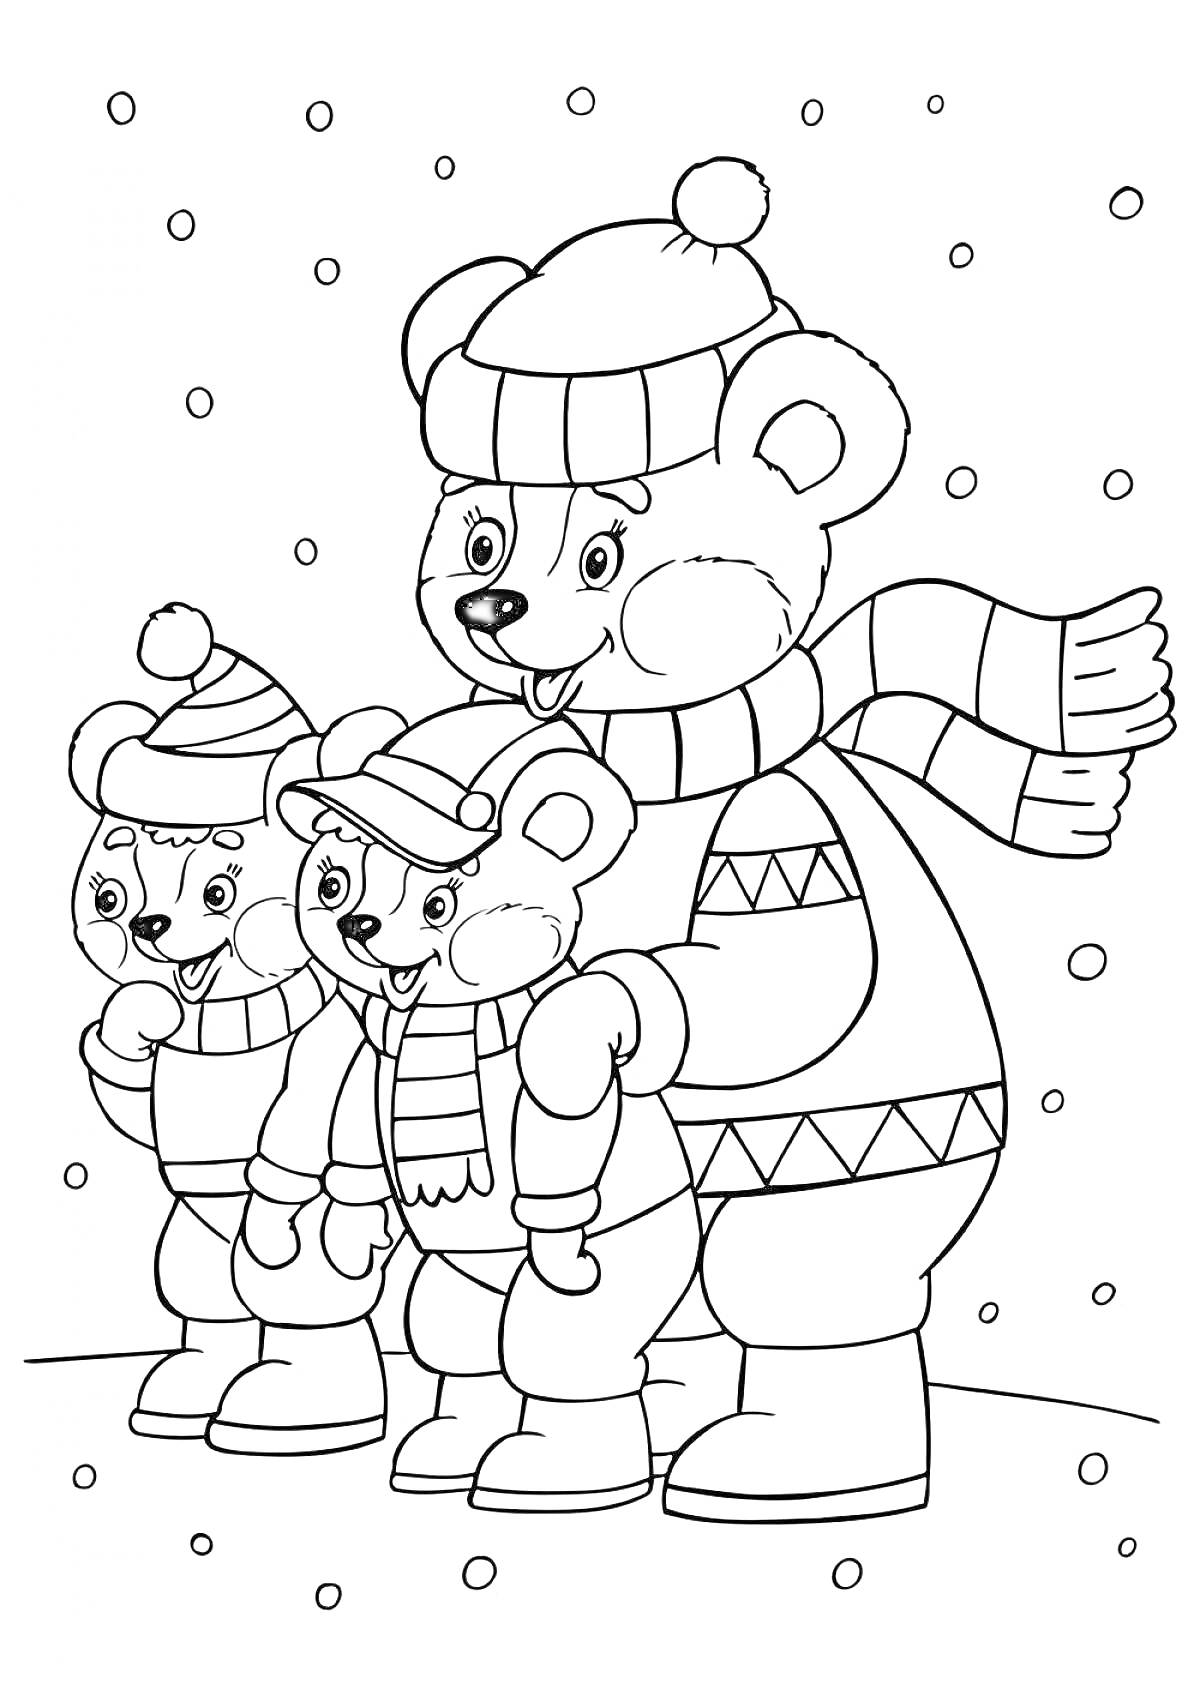 Раскраска Три медведя в зимней одежде на снегу